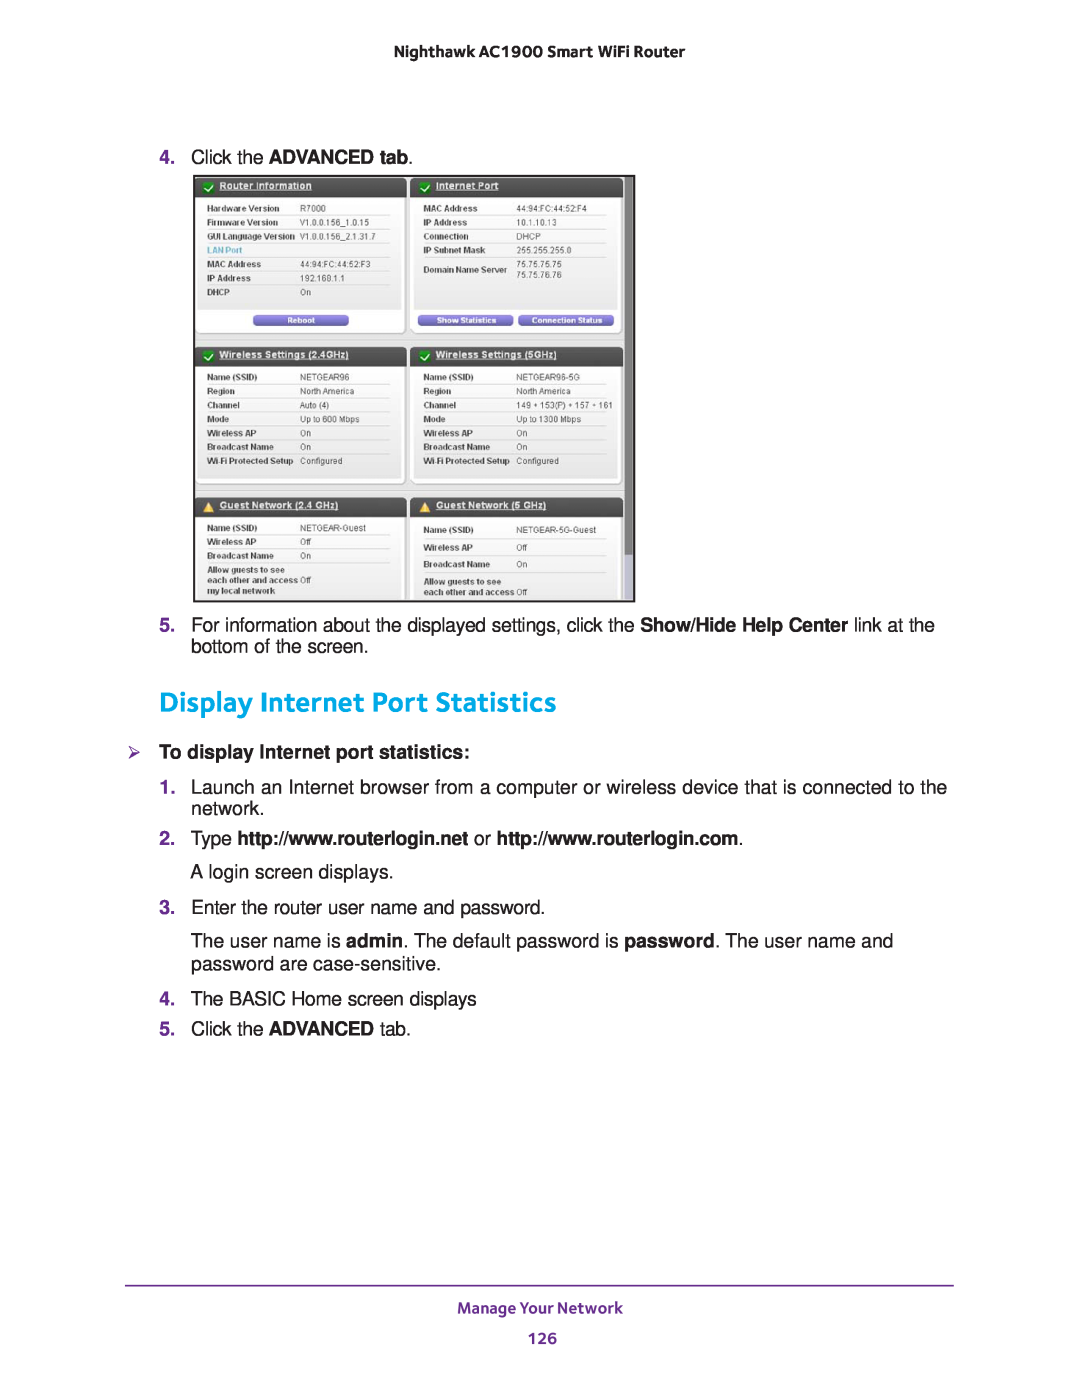 NETGEAR Model R7000 Display Internet Port Statistics, Click the ADVANCED tab,  To display Internet port statistics 